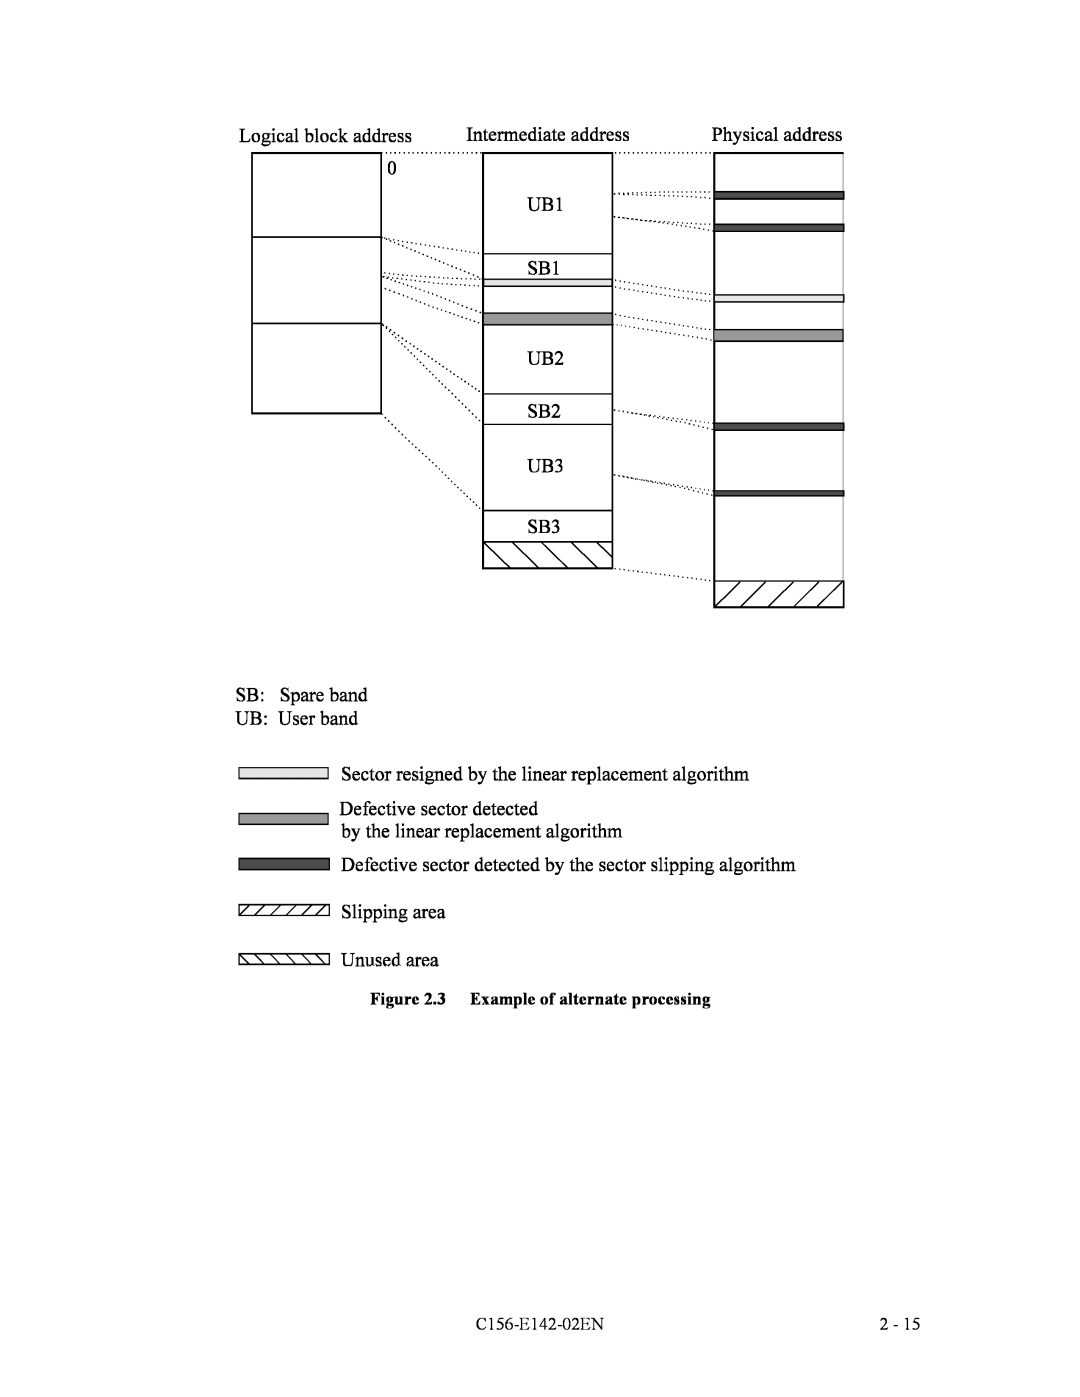 Fujitsu MCE3064AP, MCF3064AP, MCE3130AP manual 3 Example of alternate processing, C156-E142-02EN 